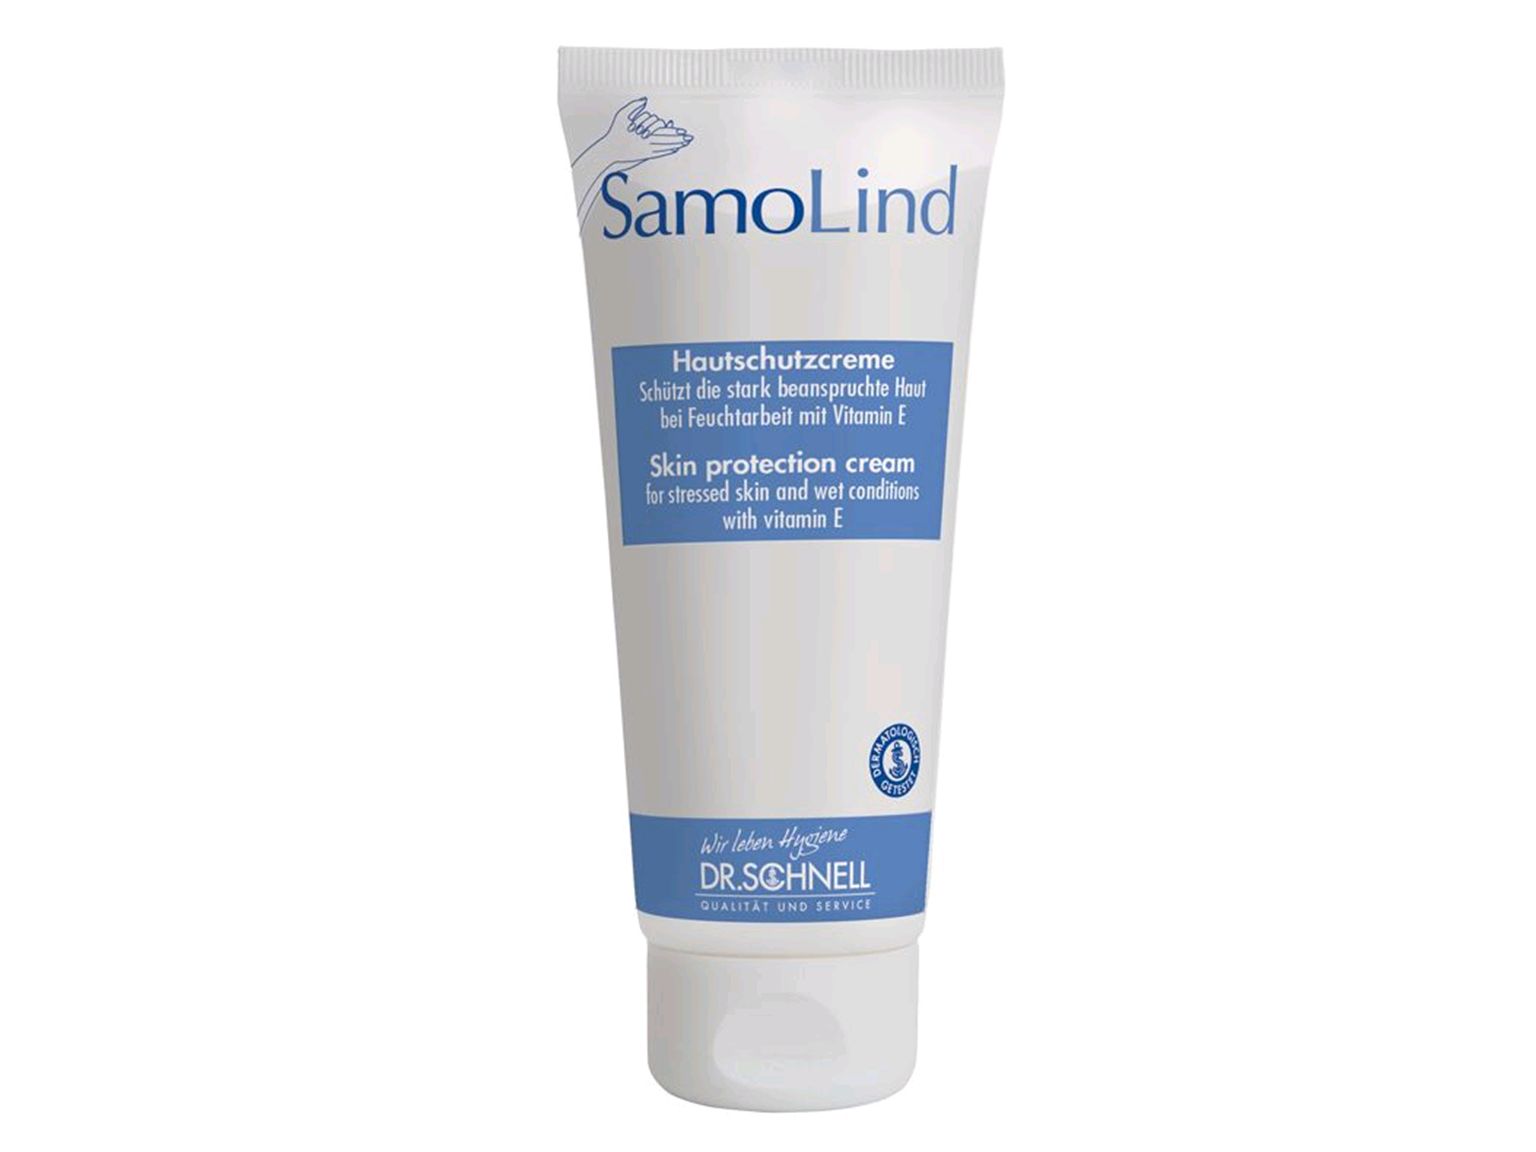 SamoLind, Hautschutzcreme gegen wässrige Arbeitsstoffe, Tube mit 100 ml